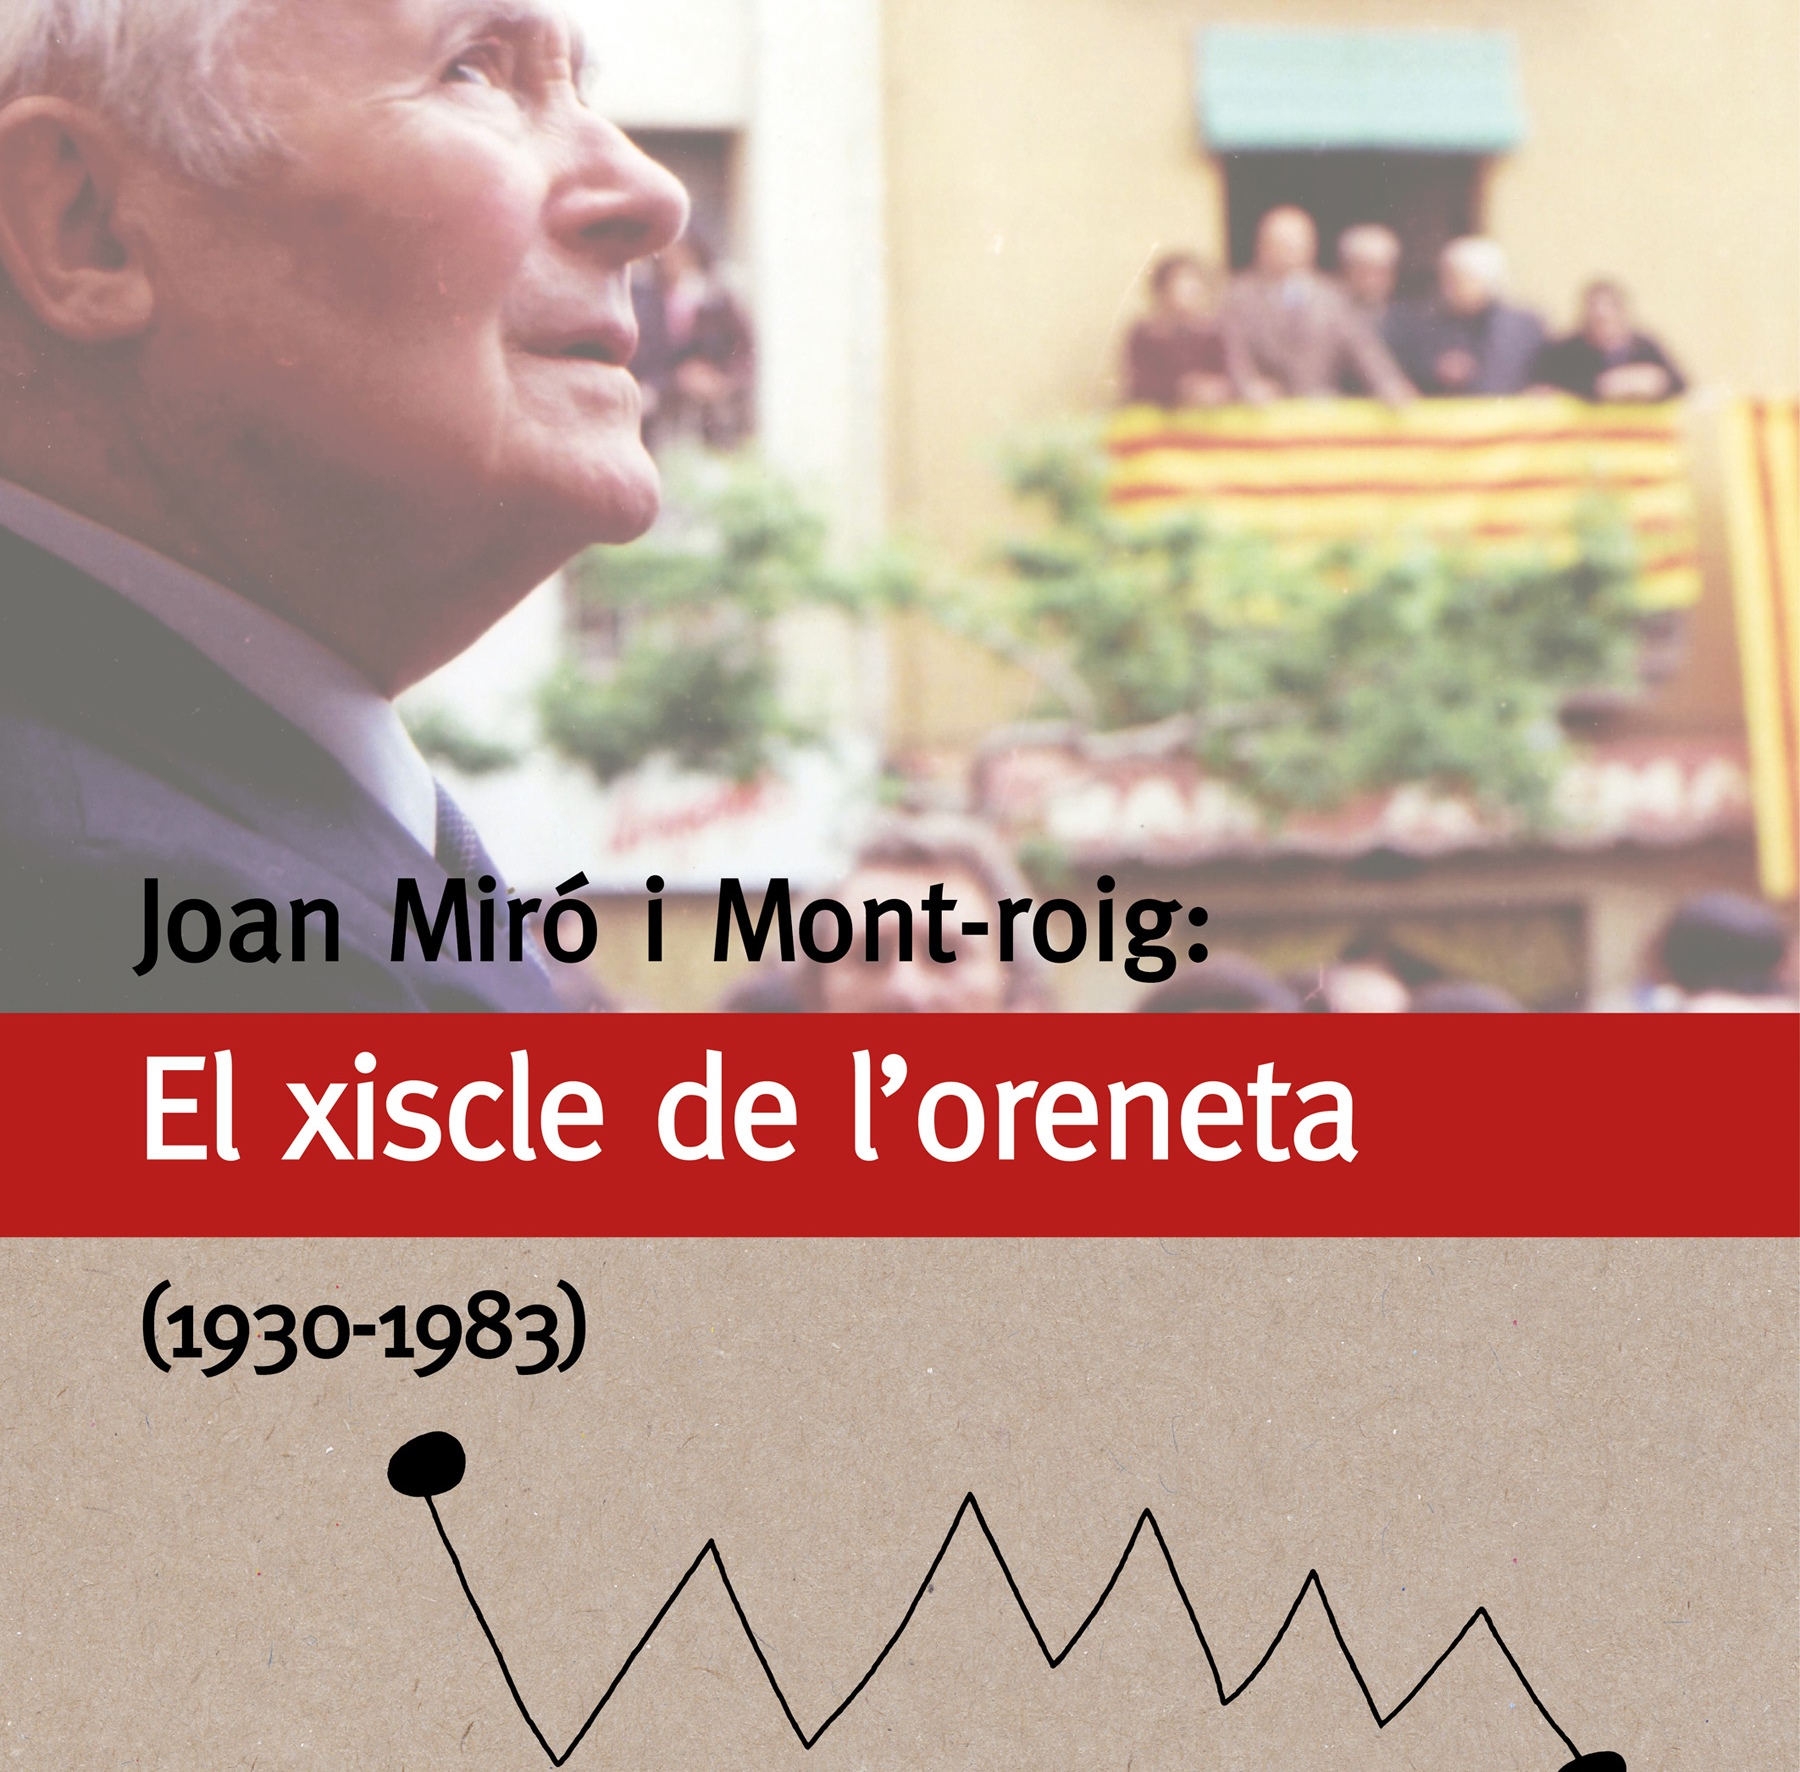 (88) LLIBRE “JOAN MIRÓ I MONT-ROIG: EL XISCLE DE L‘ORENETA (1930-1983)”